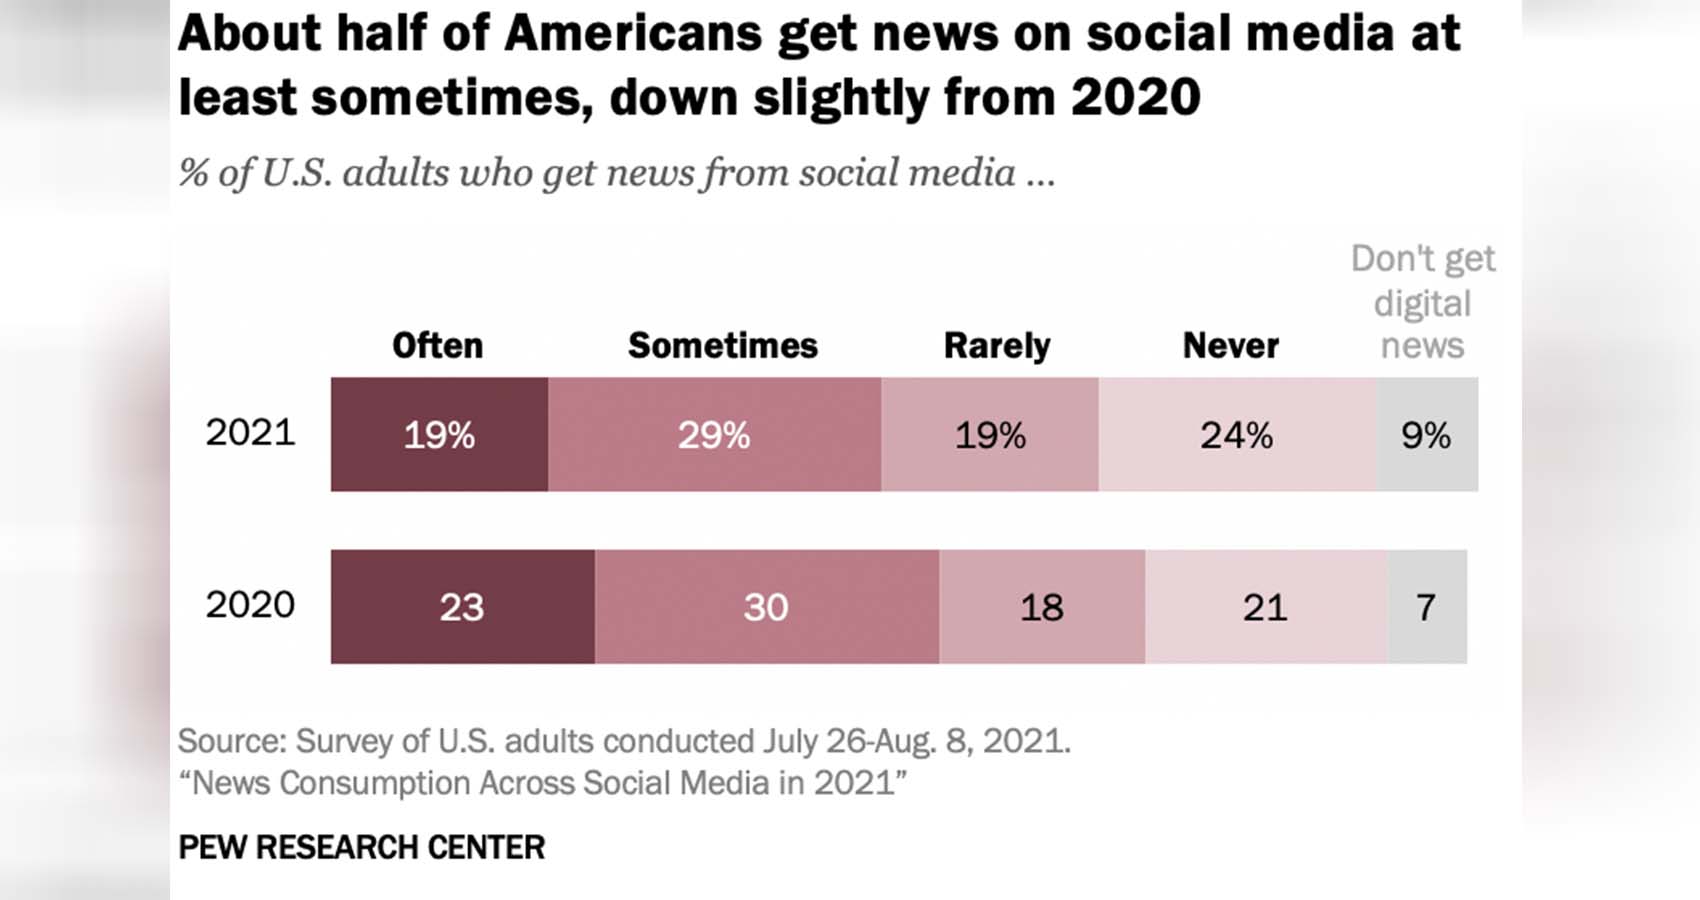 News Consumption Across Social Media in 2021